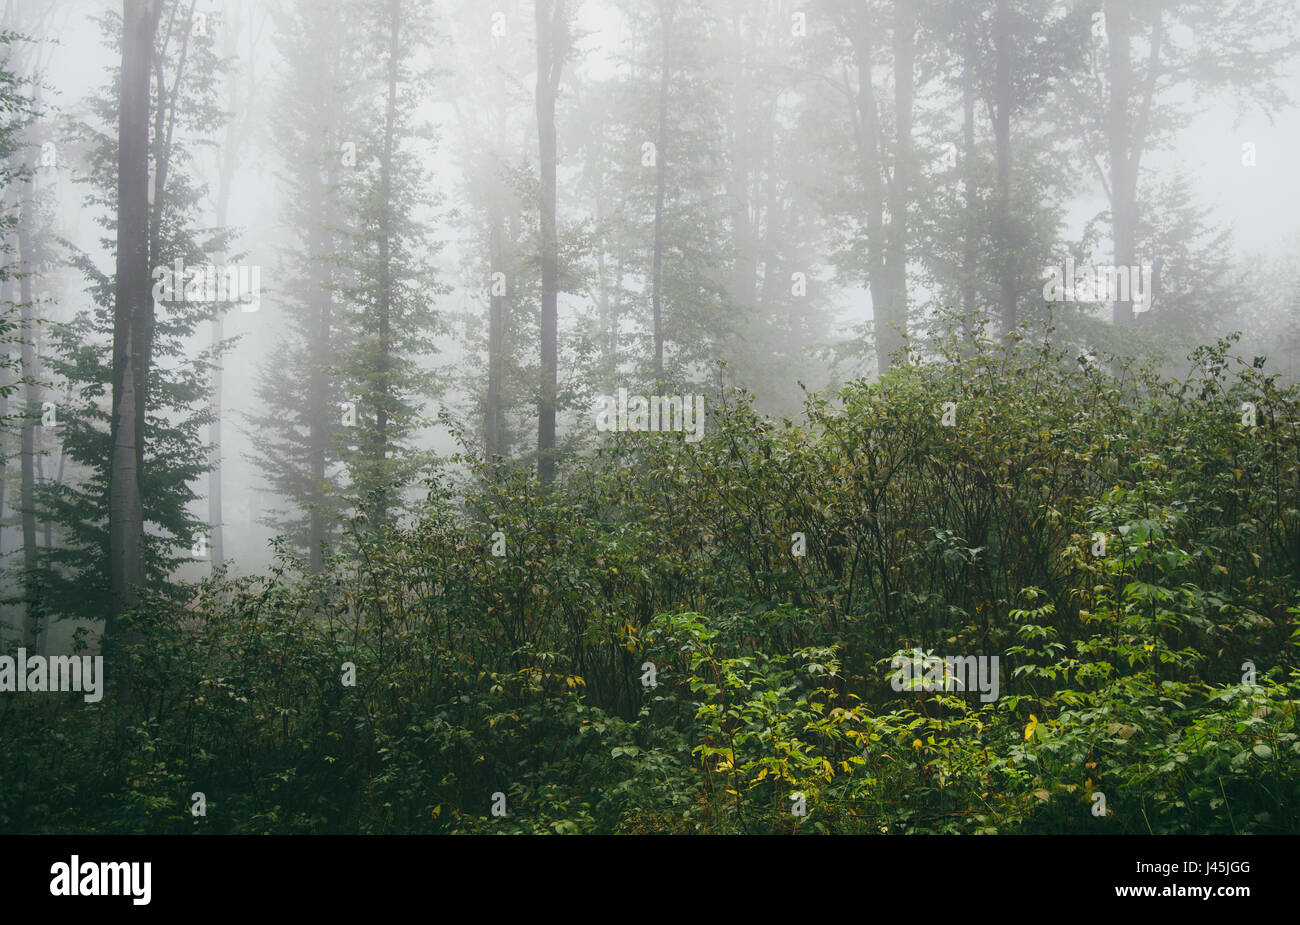 La exuberante vegetación de bosque neblinoso con plantas en el suelo y follaje verde Foto de stock